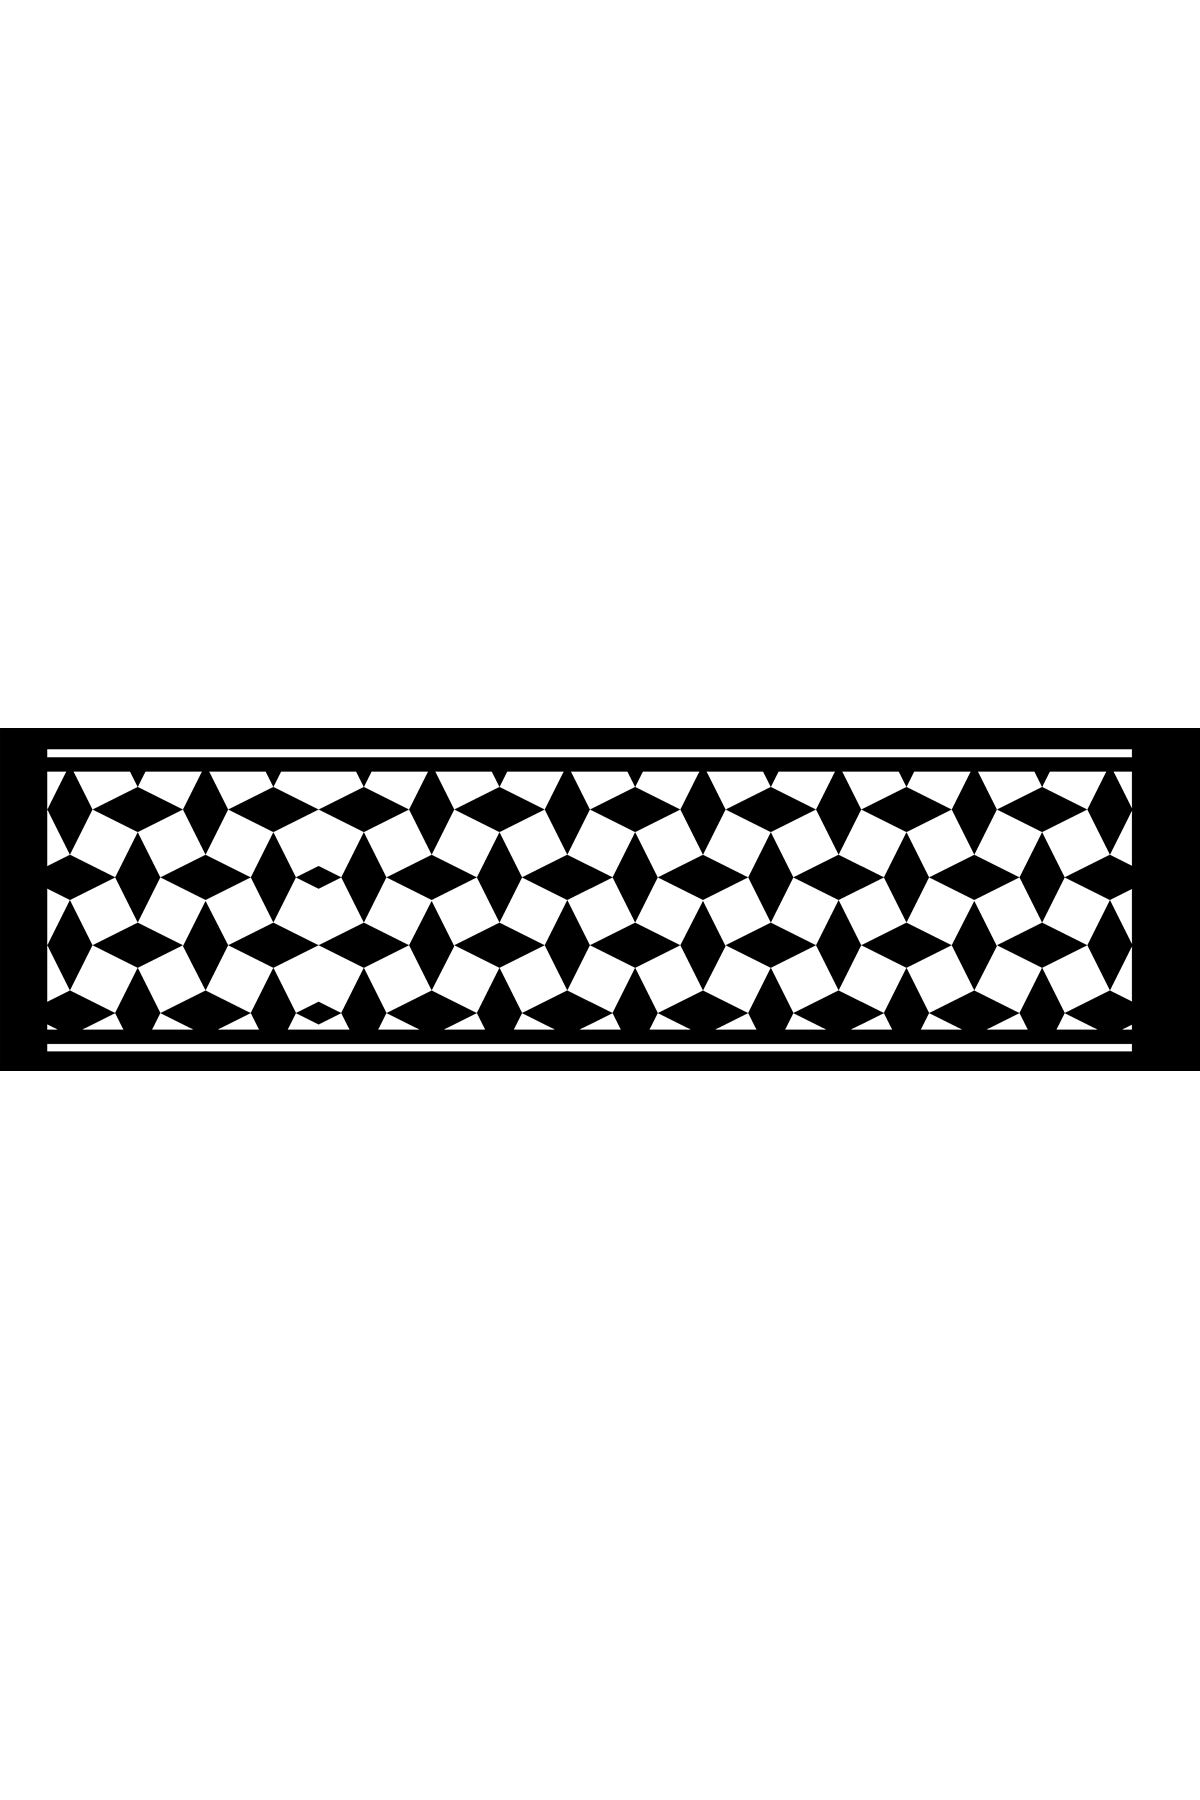 Dijital Baskılı siyah beyaz runner 40/140 cm masa örtüsü dama